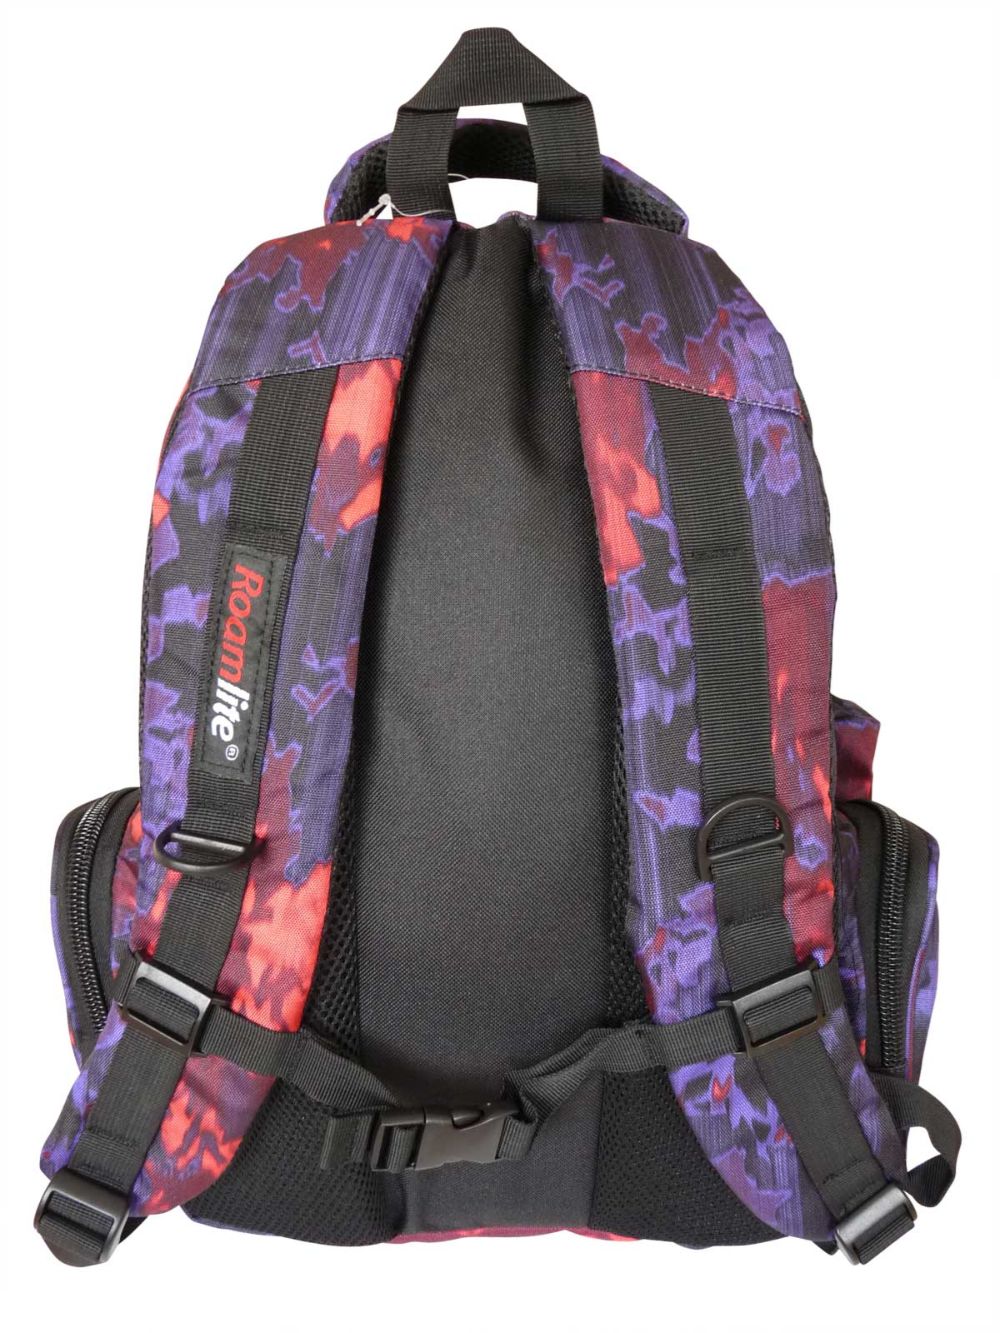 Roamlite Childrens Backpack Purple Orange Funky Water pattern RL838 back